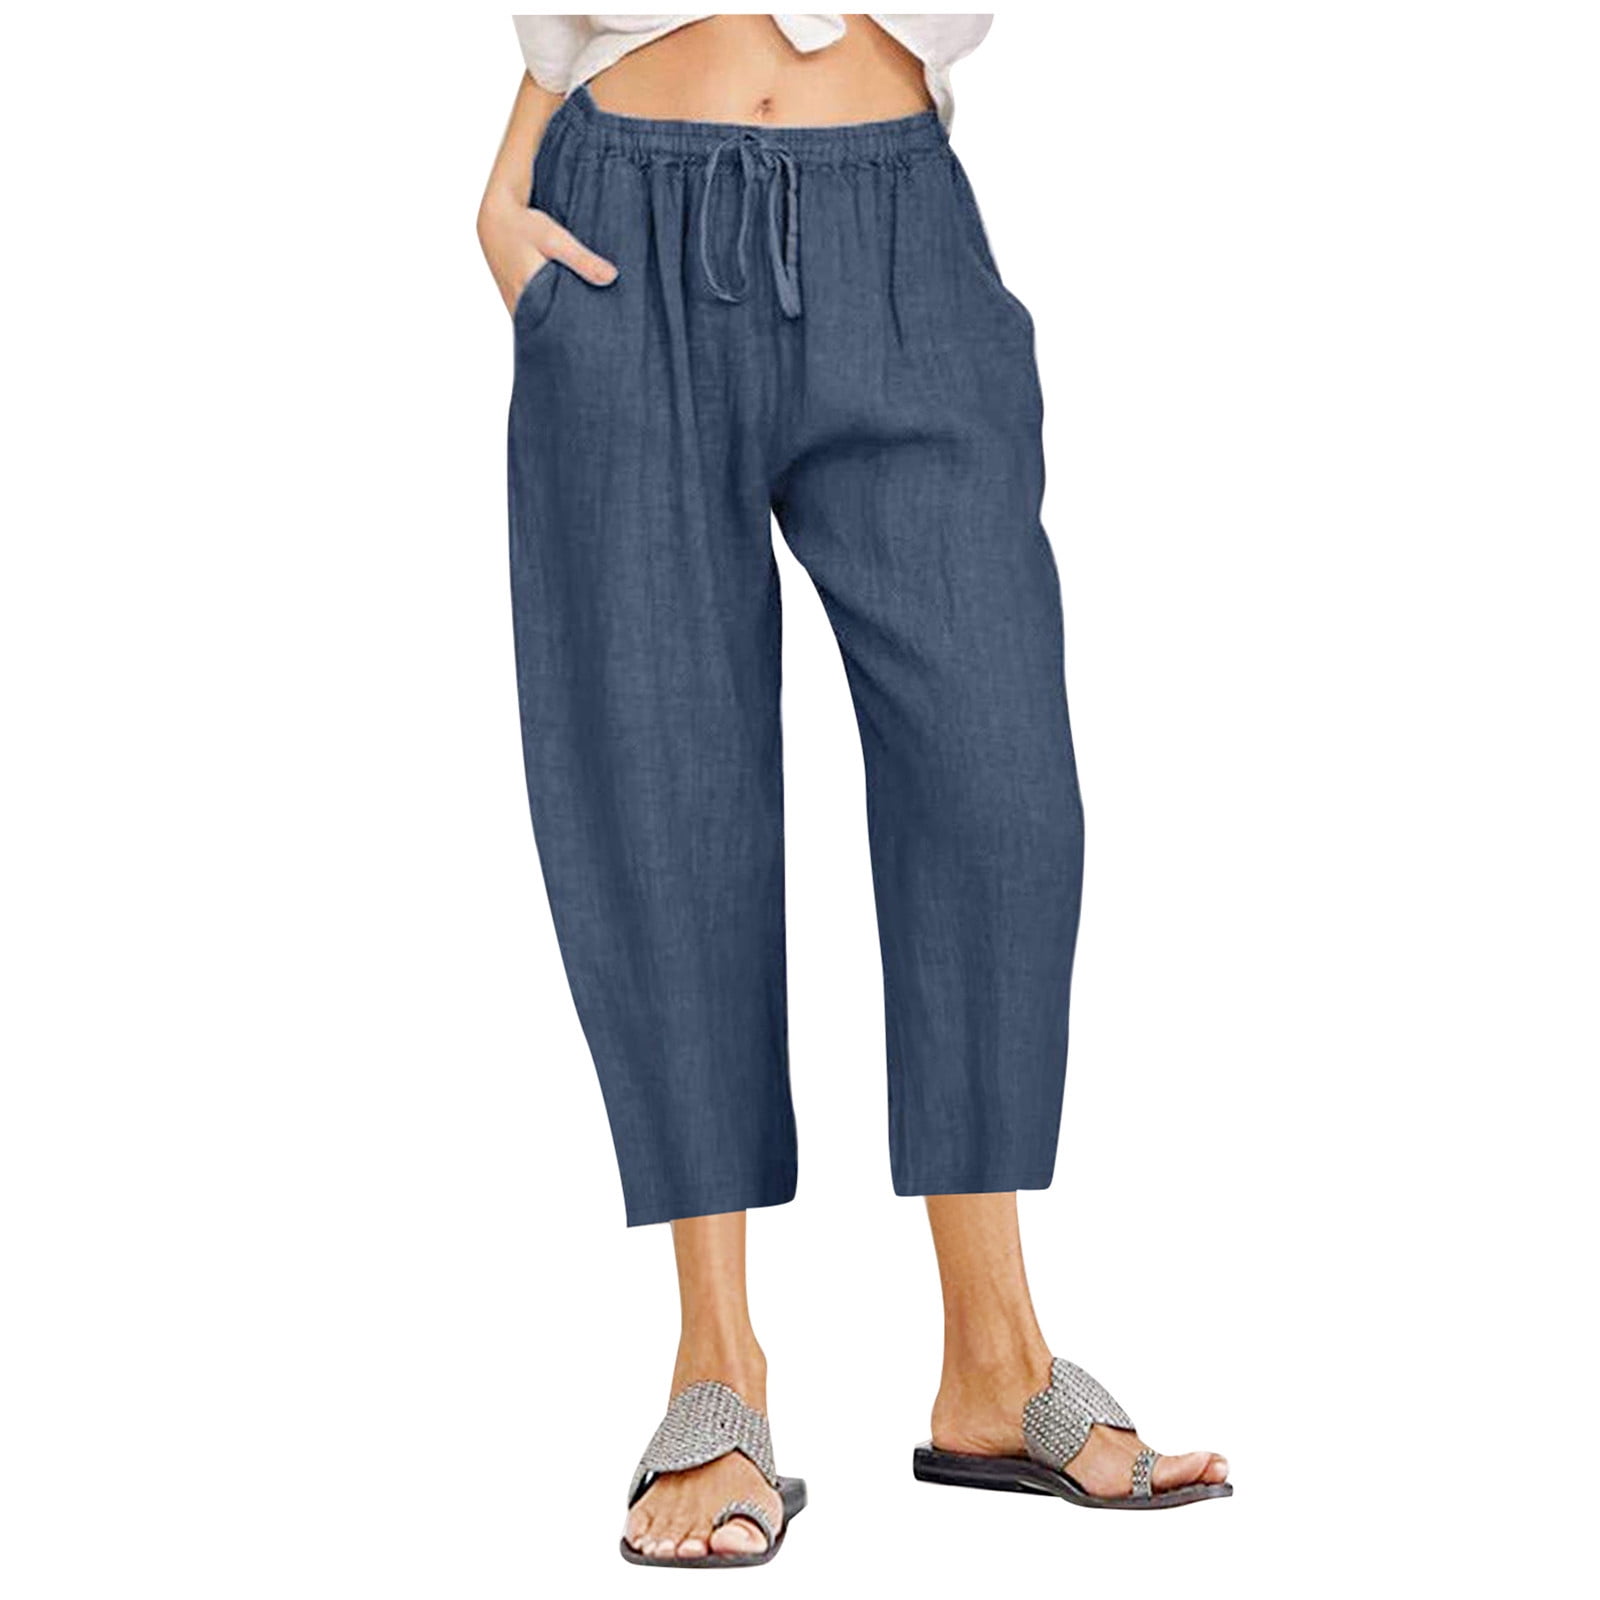 Jsezml Women's Cotton Linen Crop Pants Capris with Pockets